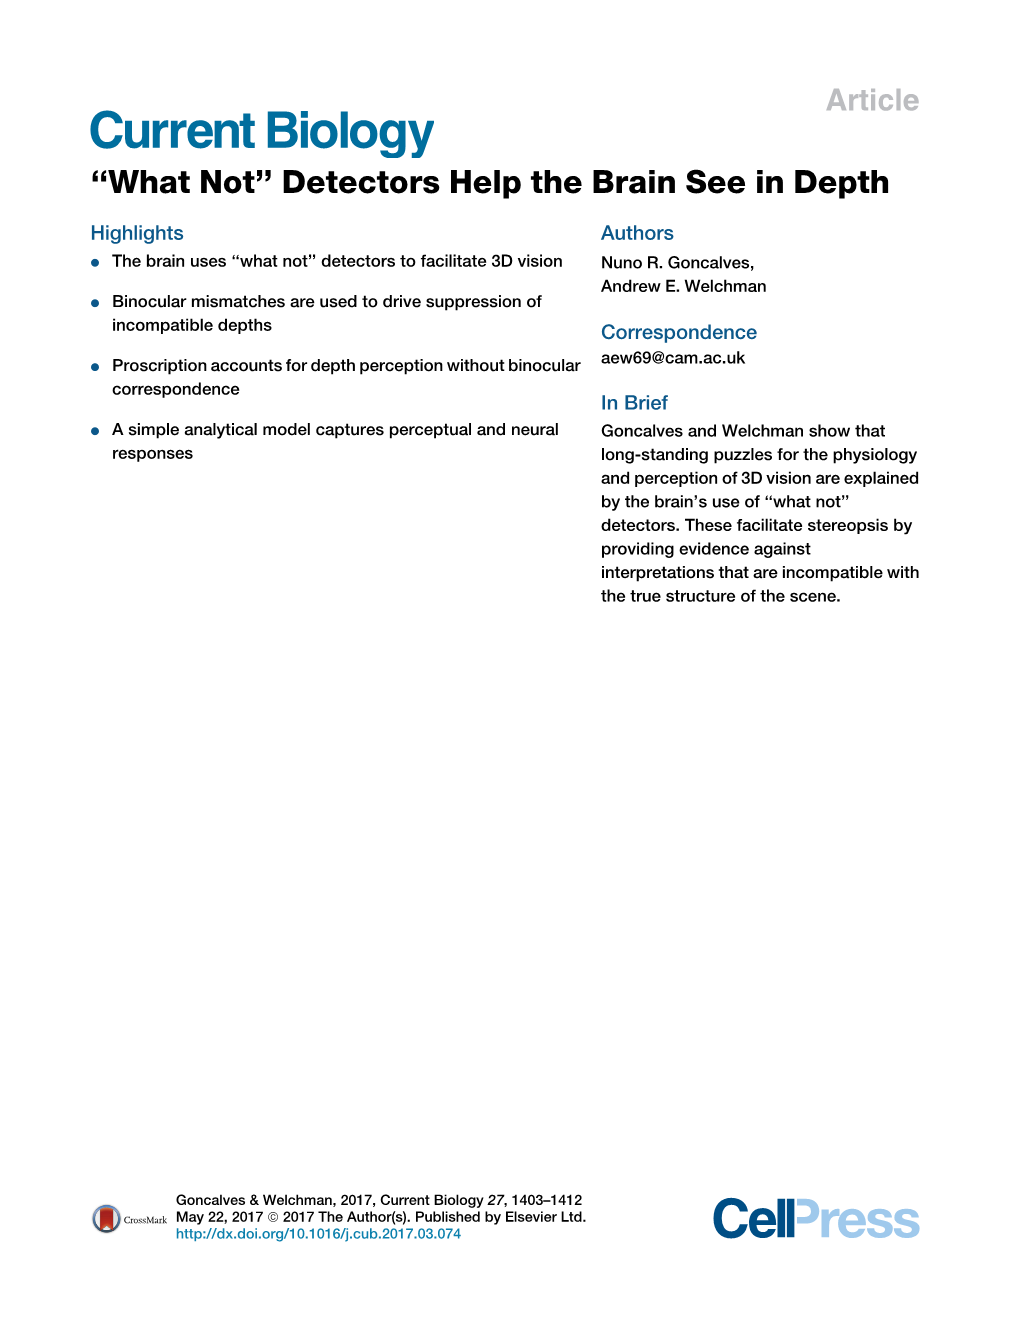 Detectors Help the Brain See in Depth